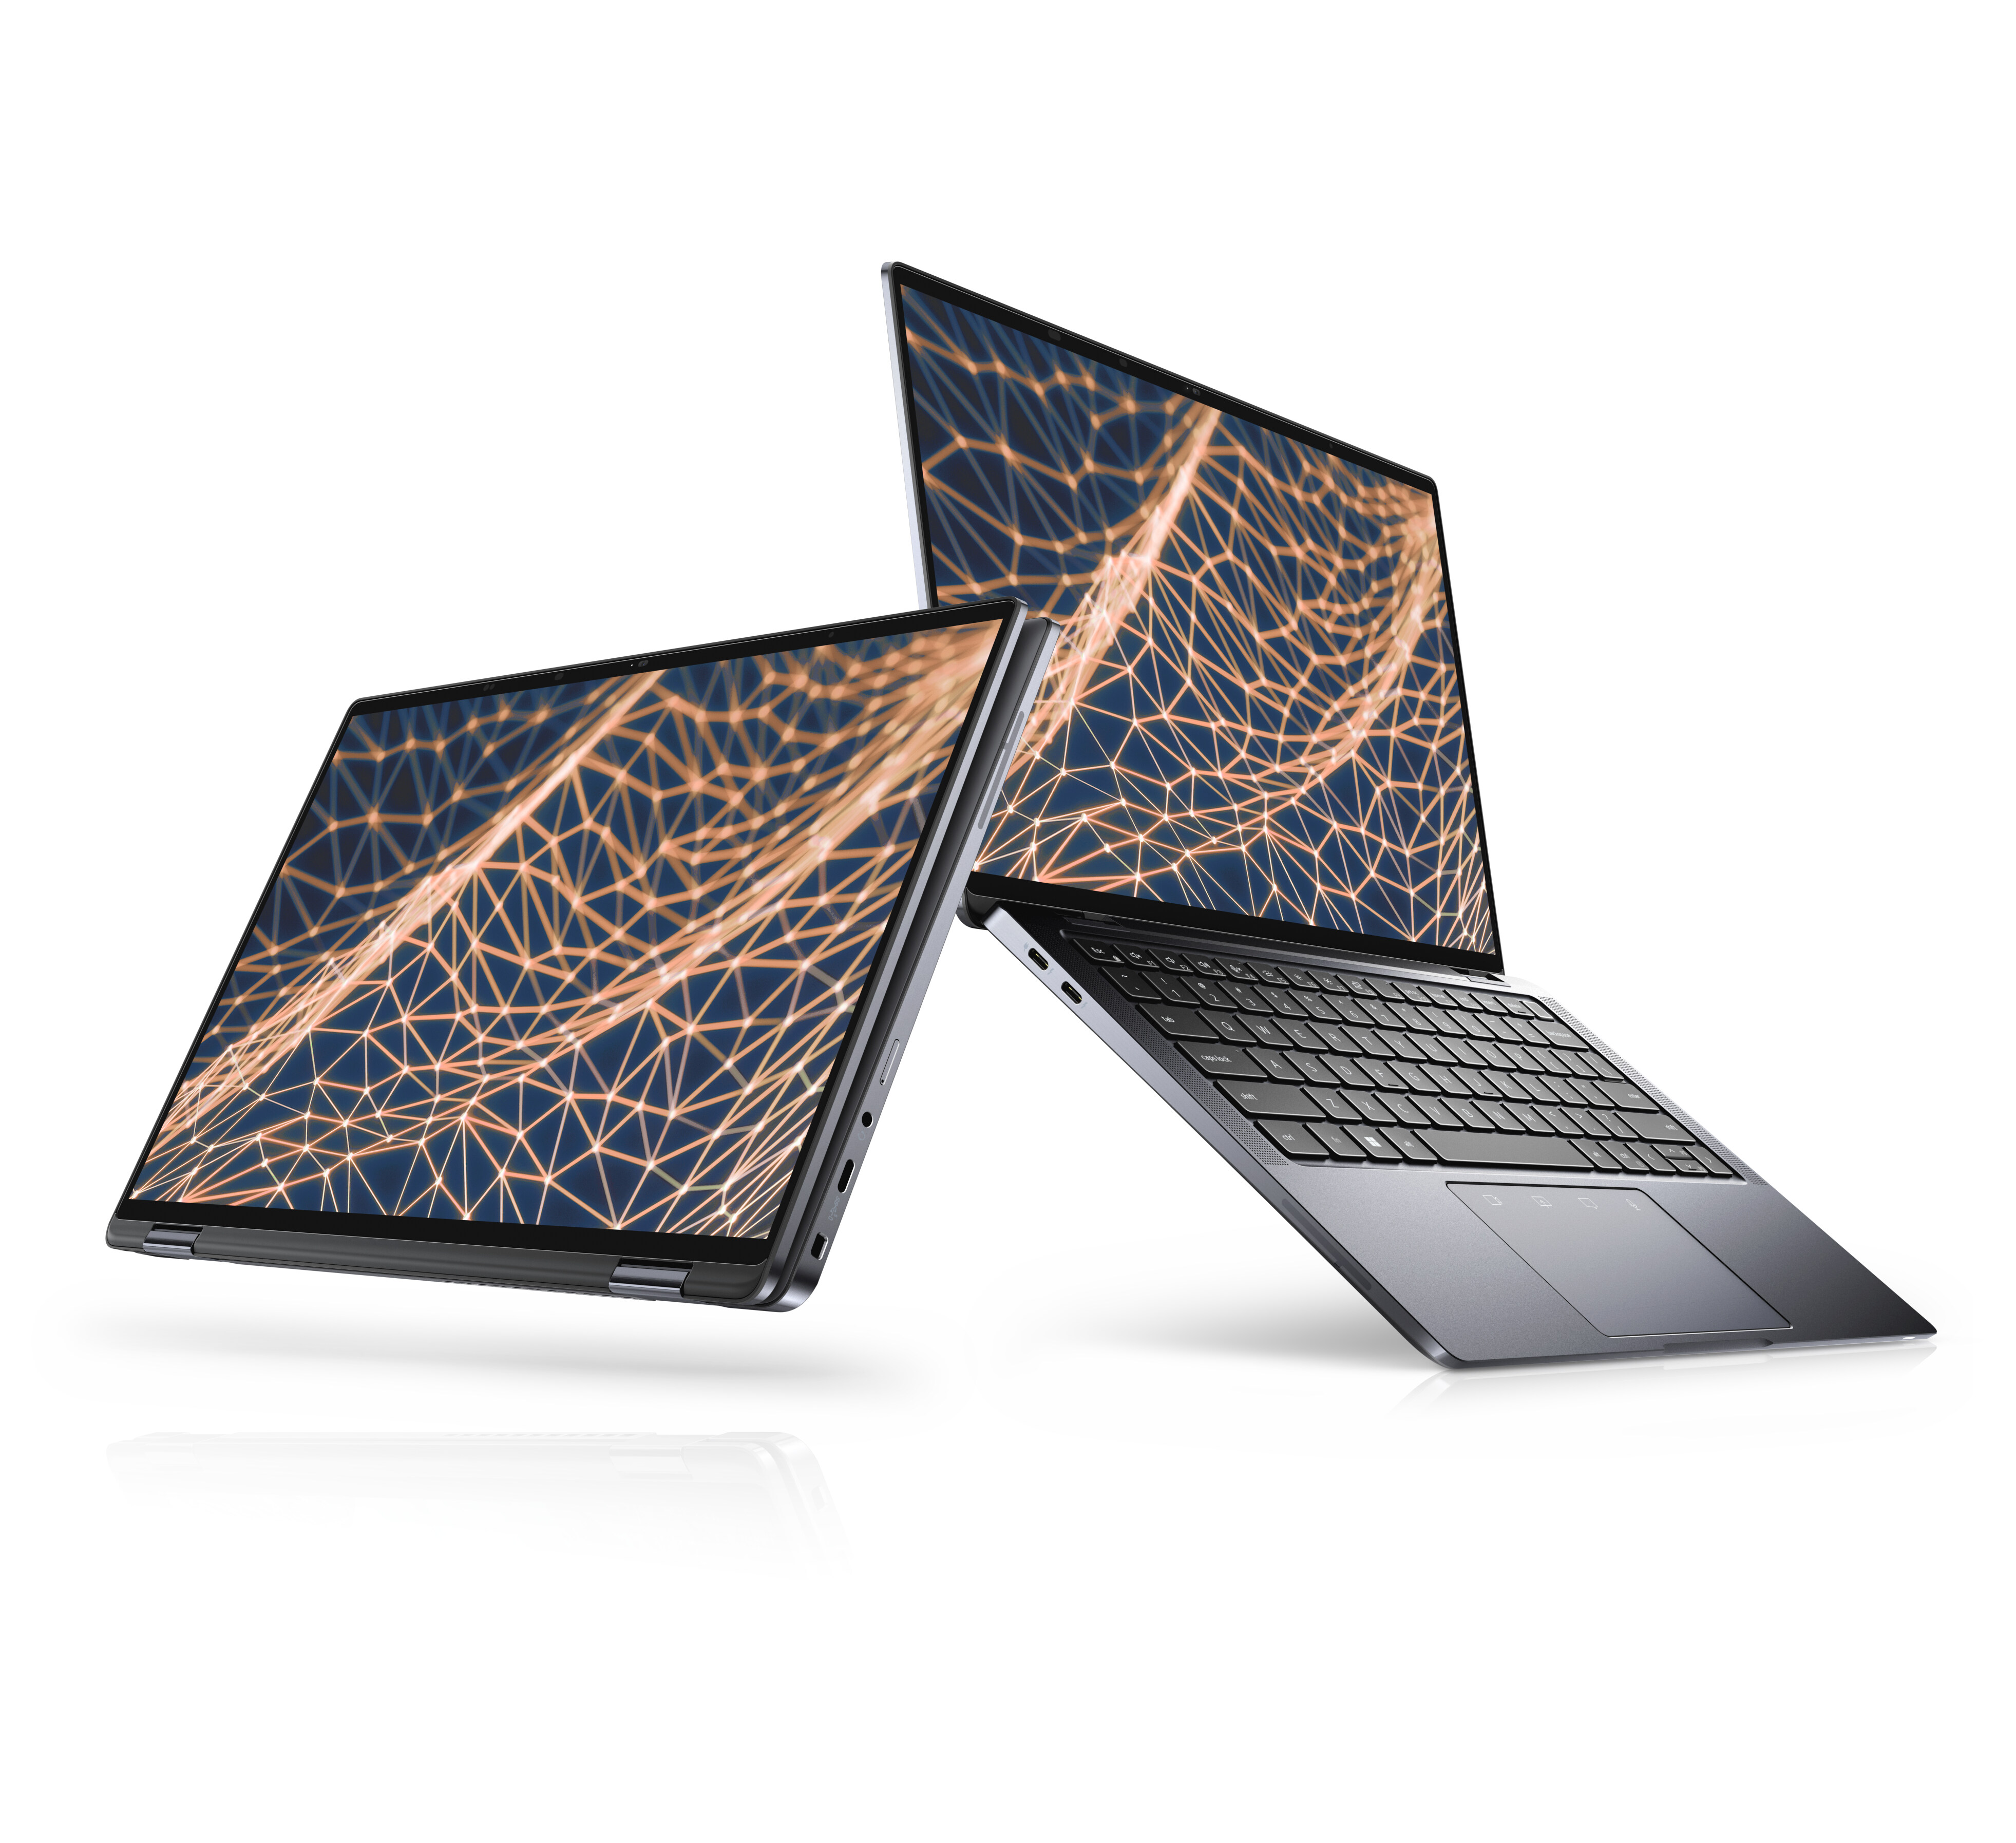 2-in-1 i7 Core Laptops